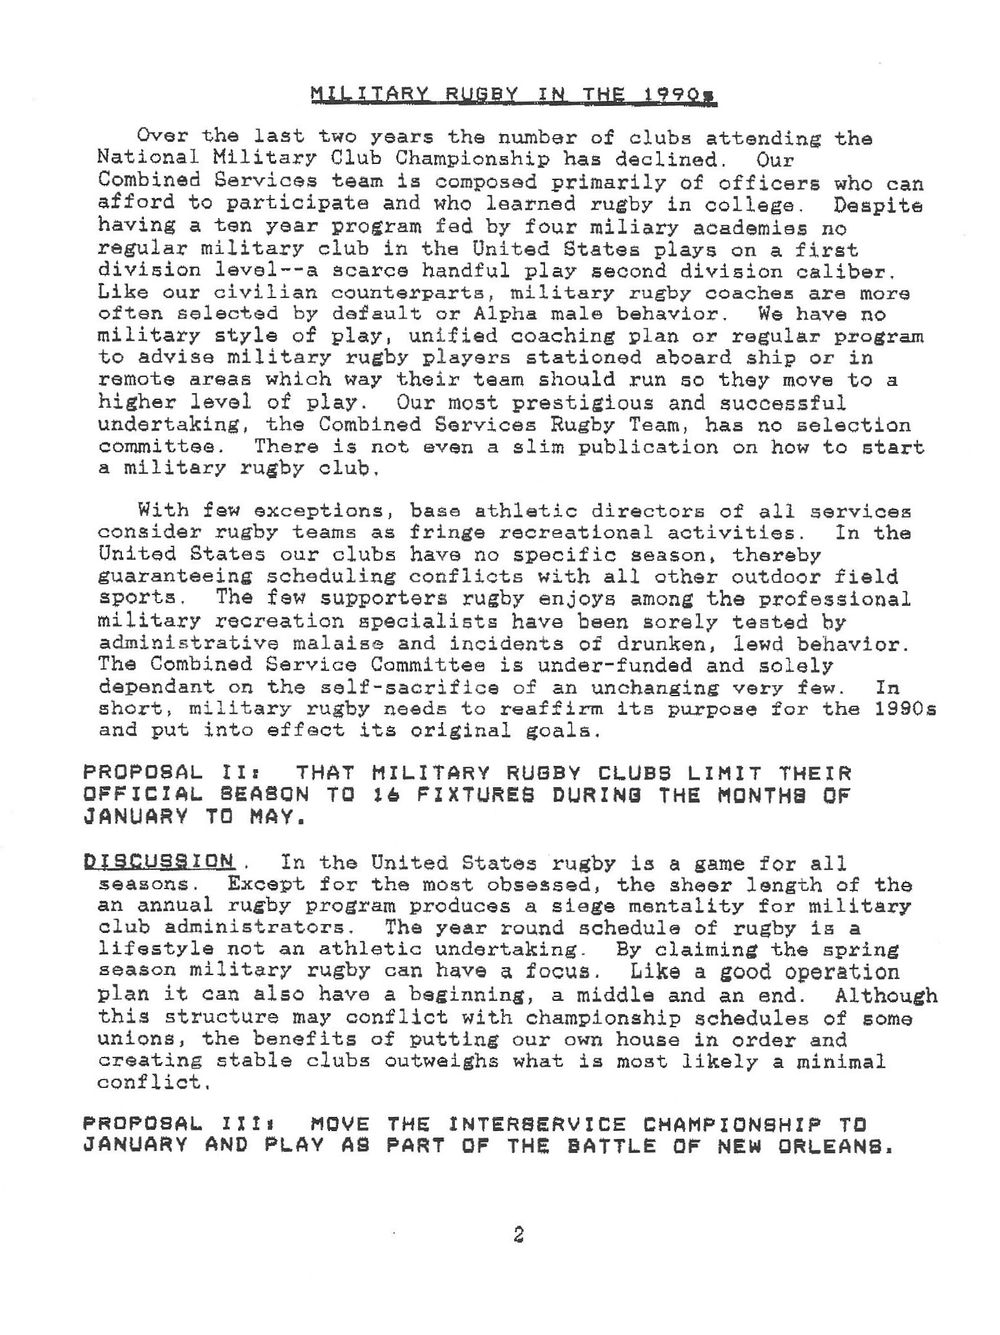 1990 agenda 4.jpg